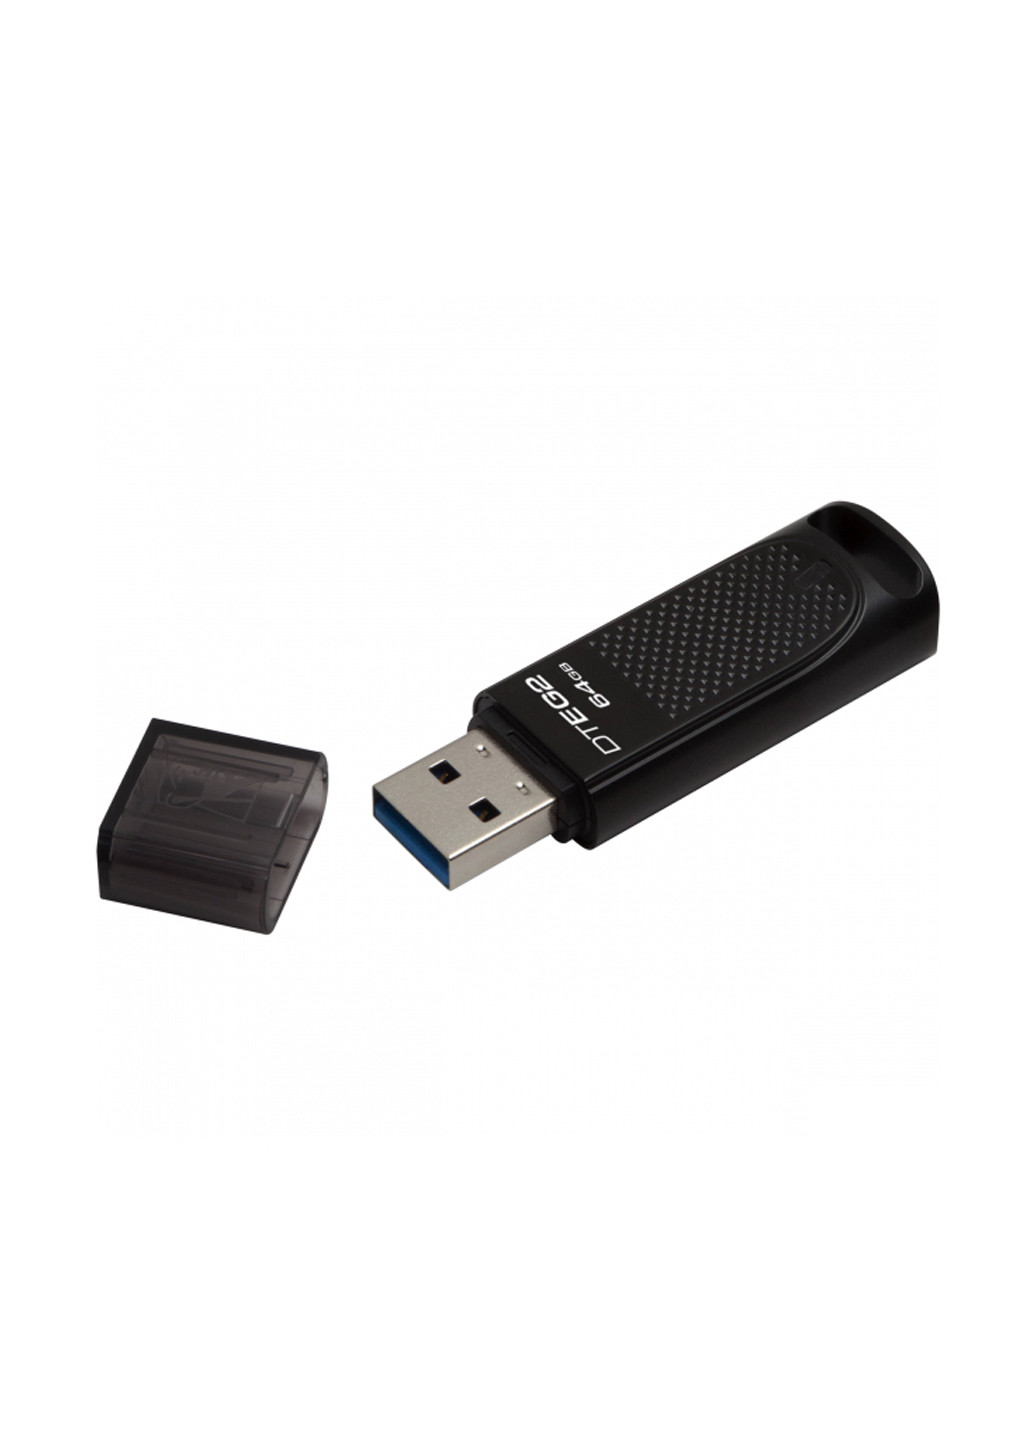 Флеш память USB DataTraveler Elite G2 64GB (DTEG2/64GB) Kingston флеш память usb kingston datatraveler elite g2 64gb (dteg2/64gb) (136742792)